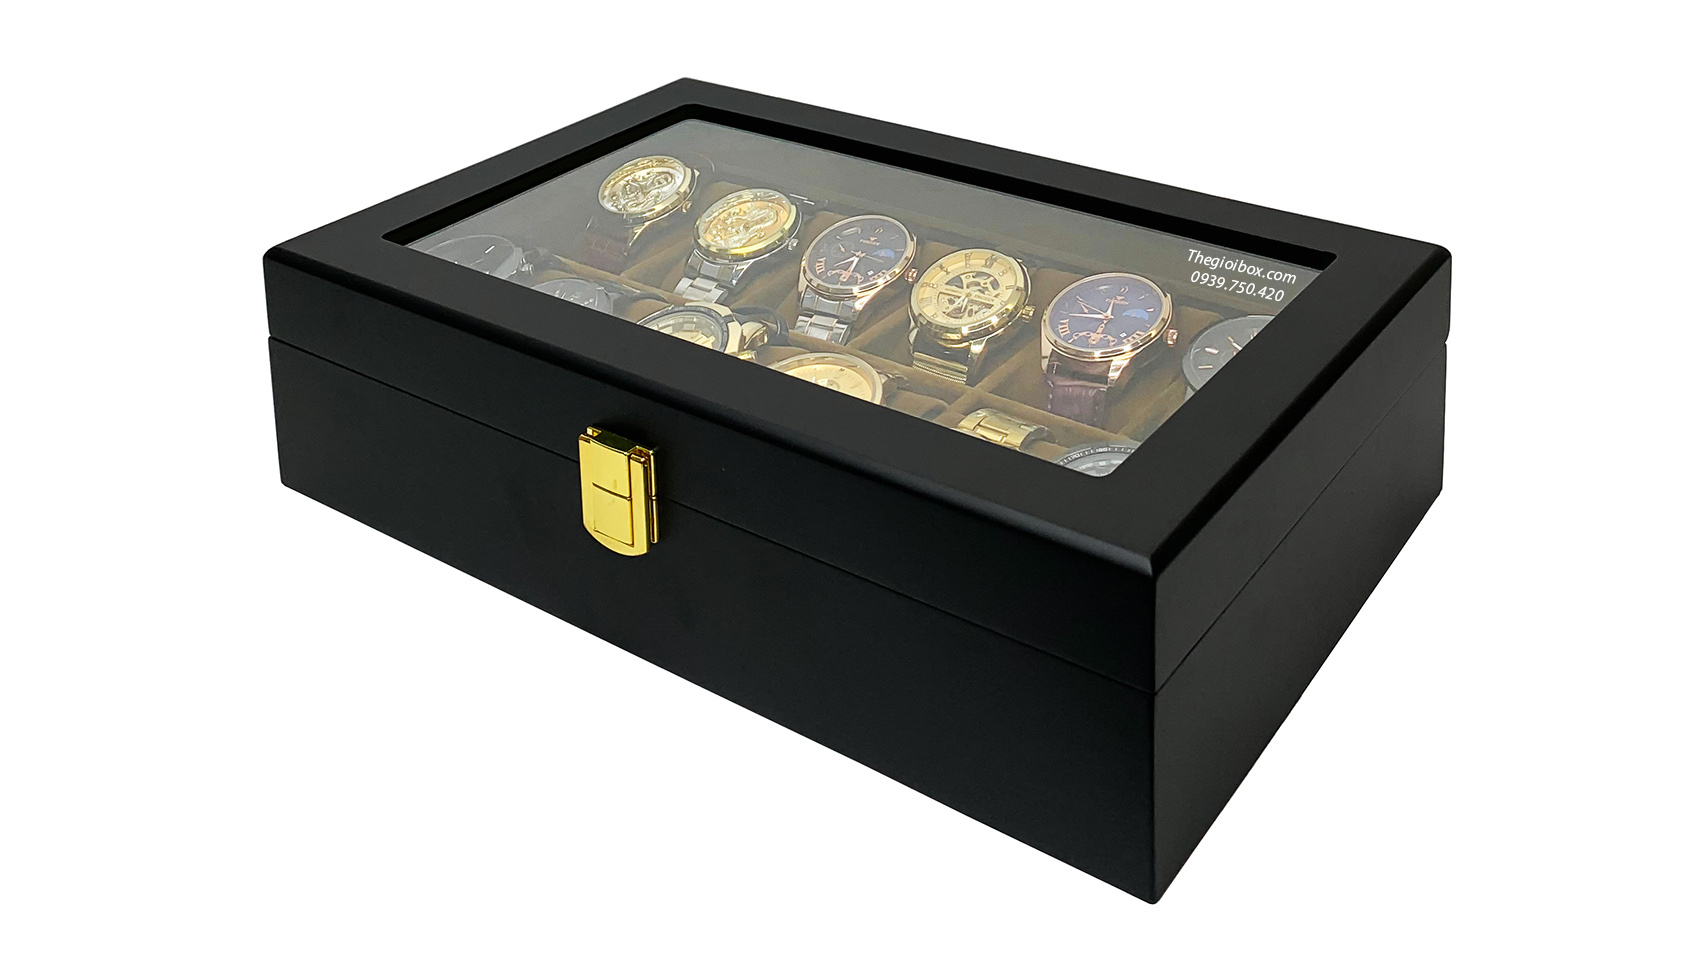 hộp để 12 chiếc đồng hồ vỏ gỗ đen - lót nhung nâu nhỏ gọn, cao cấp, giá rẻ